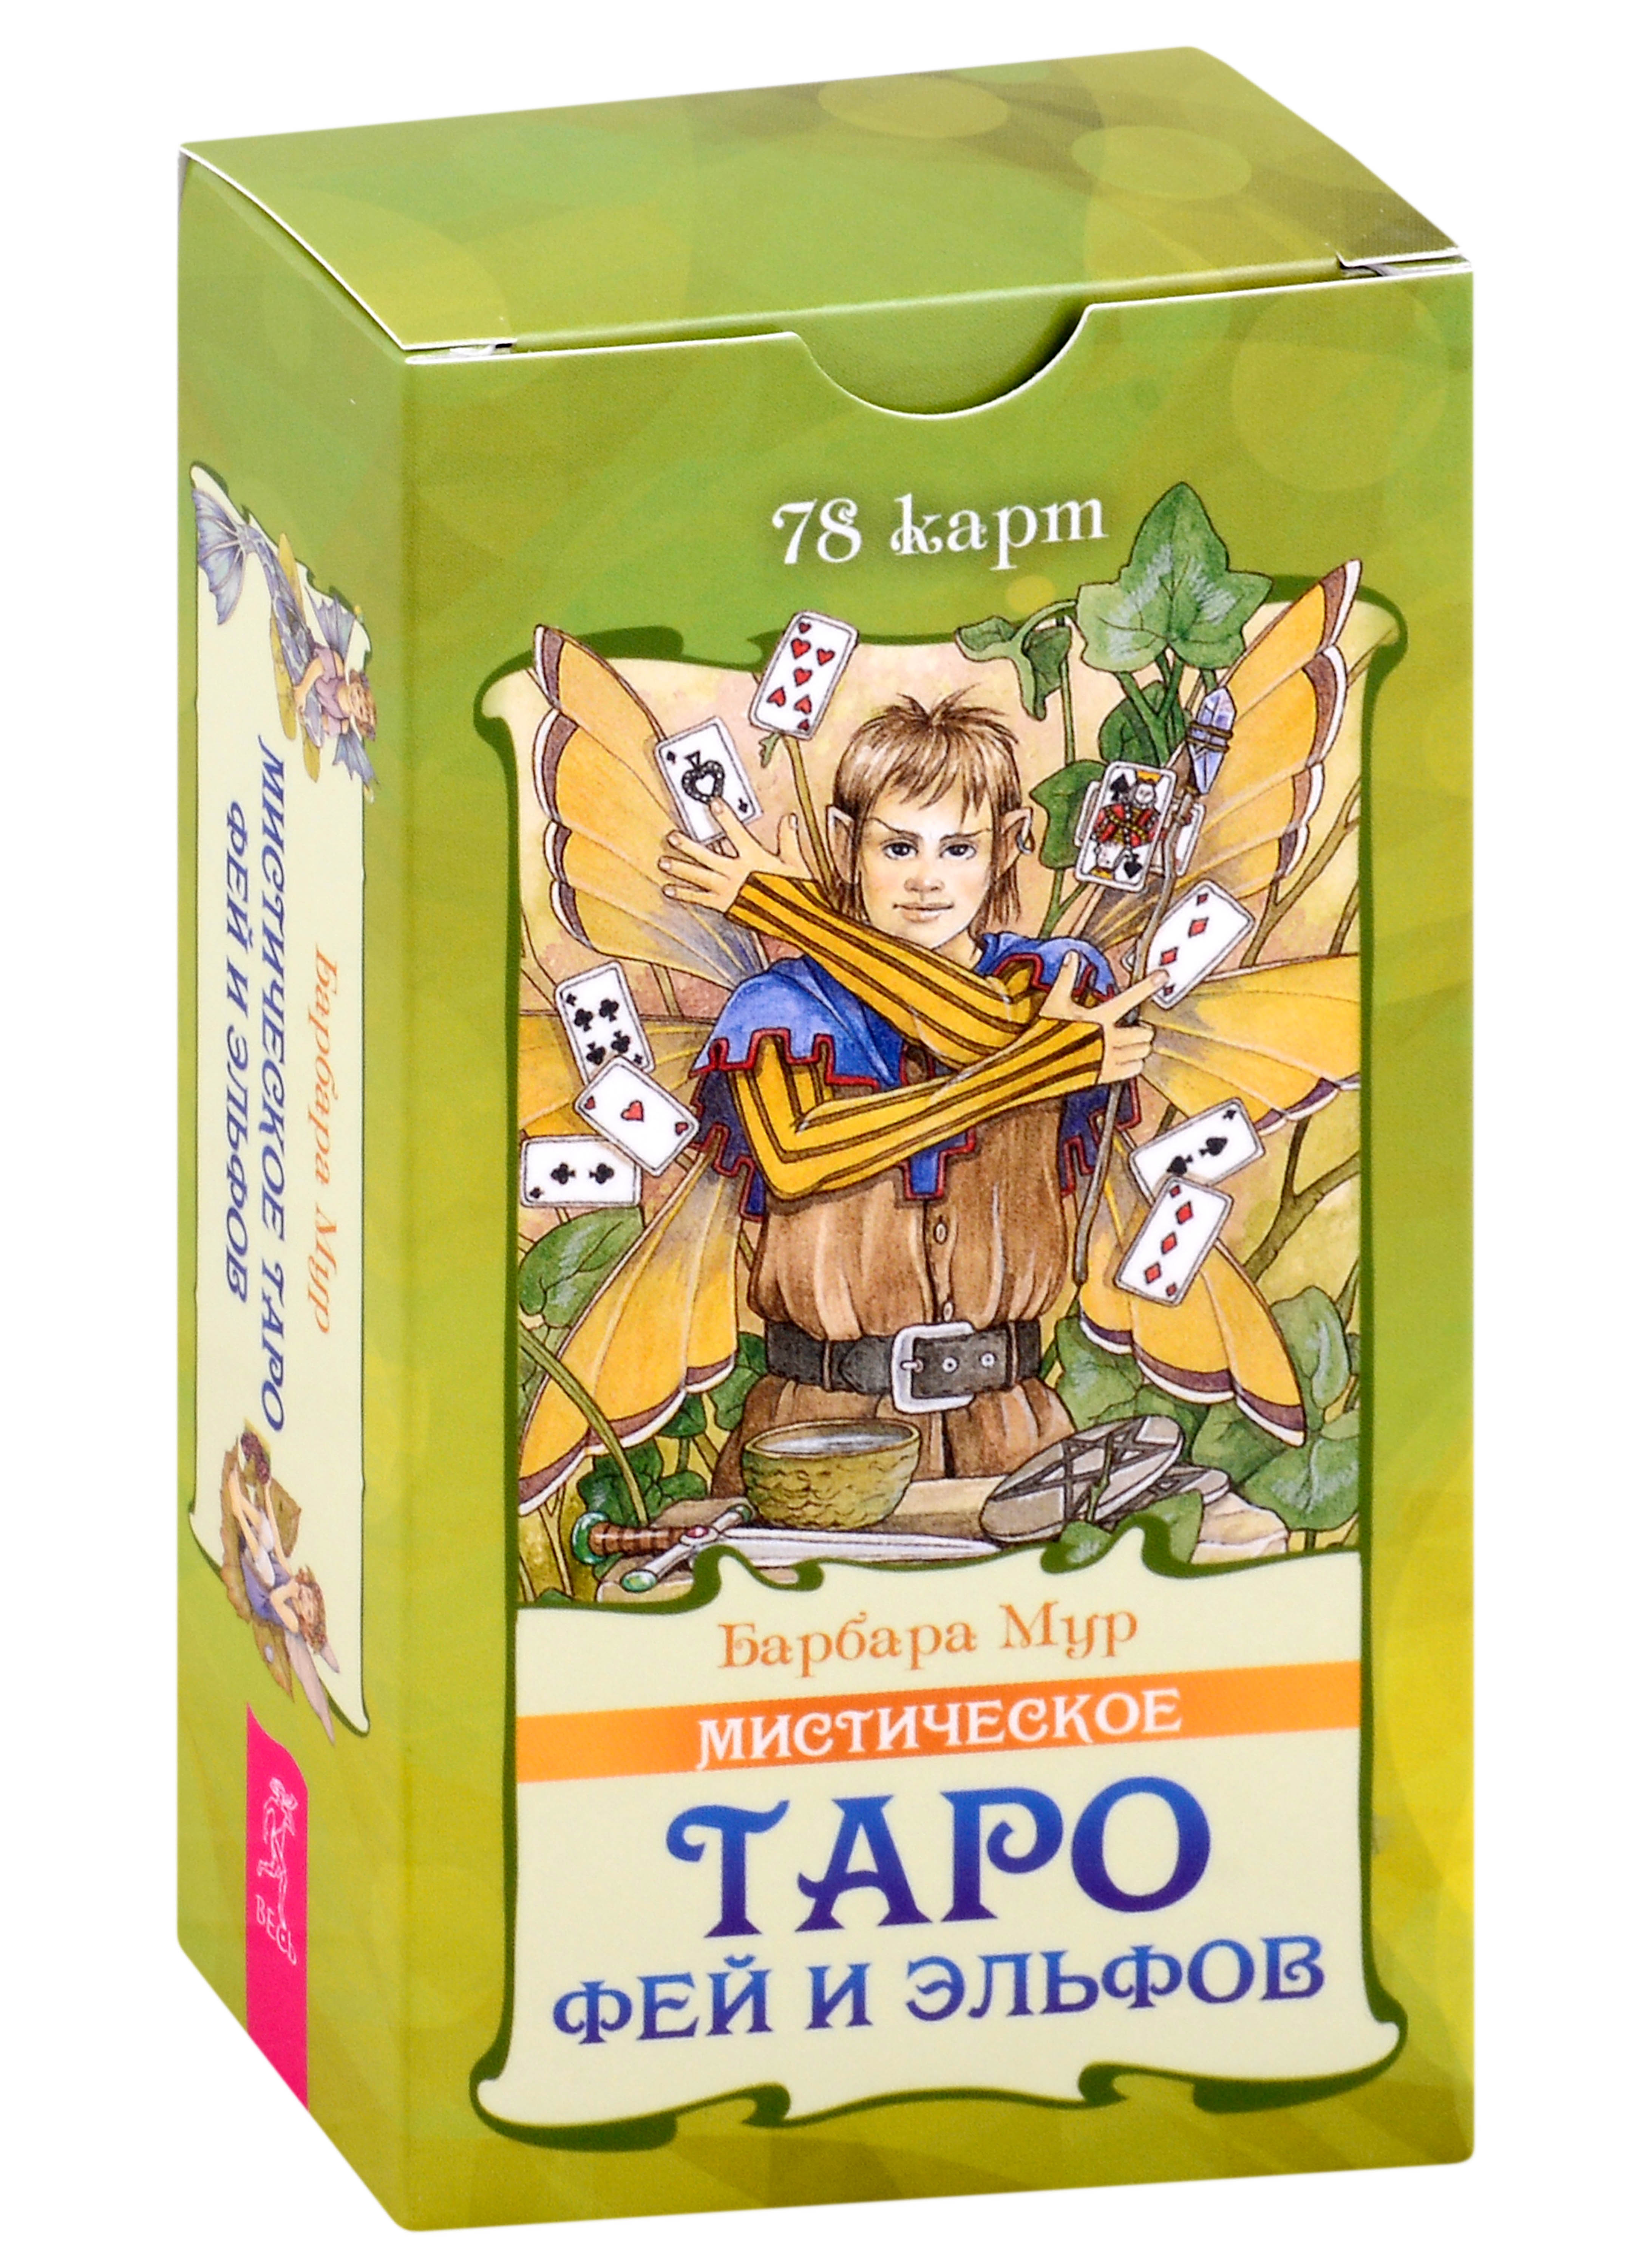 Мур Барбара Мистическое Таро фей и эльфов (78 карт) (5015) цена и фото